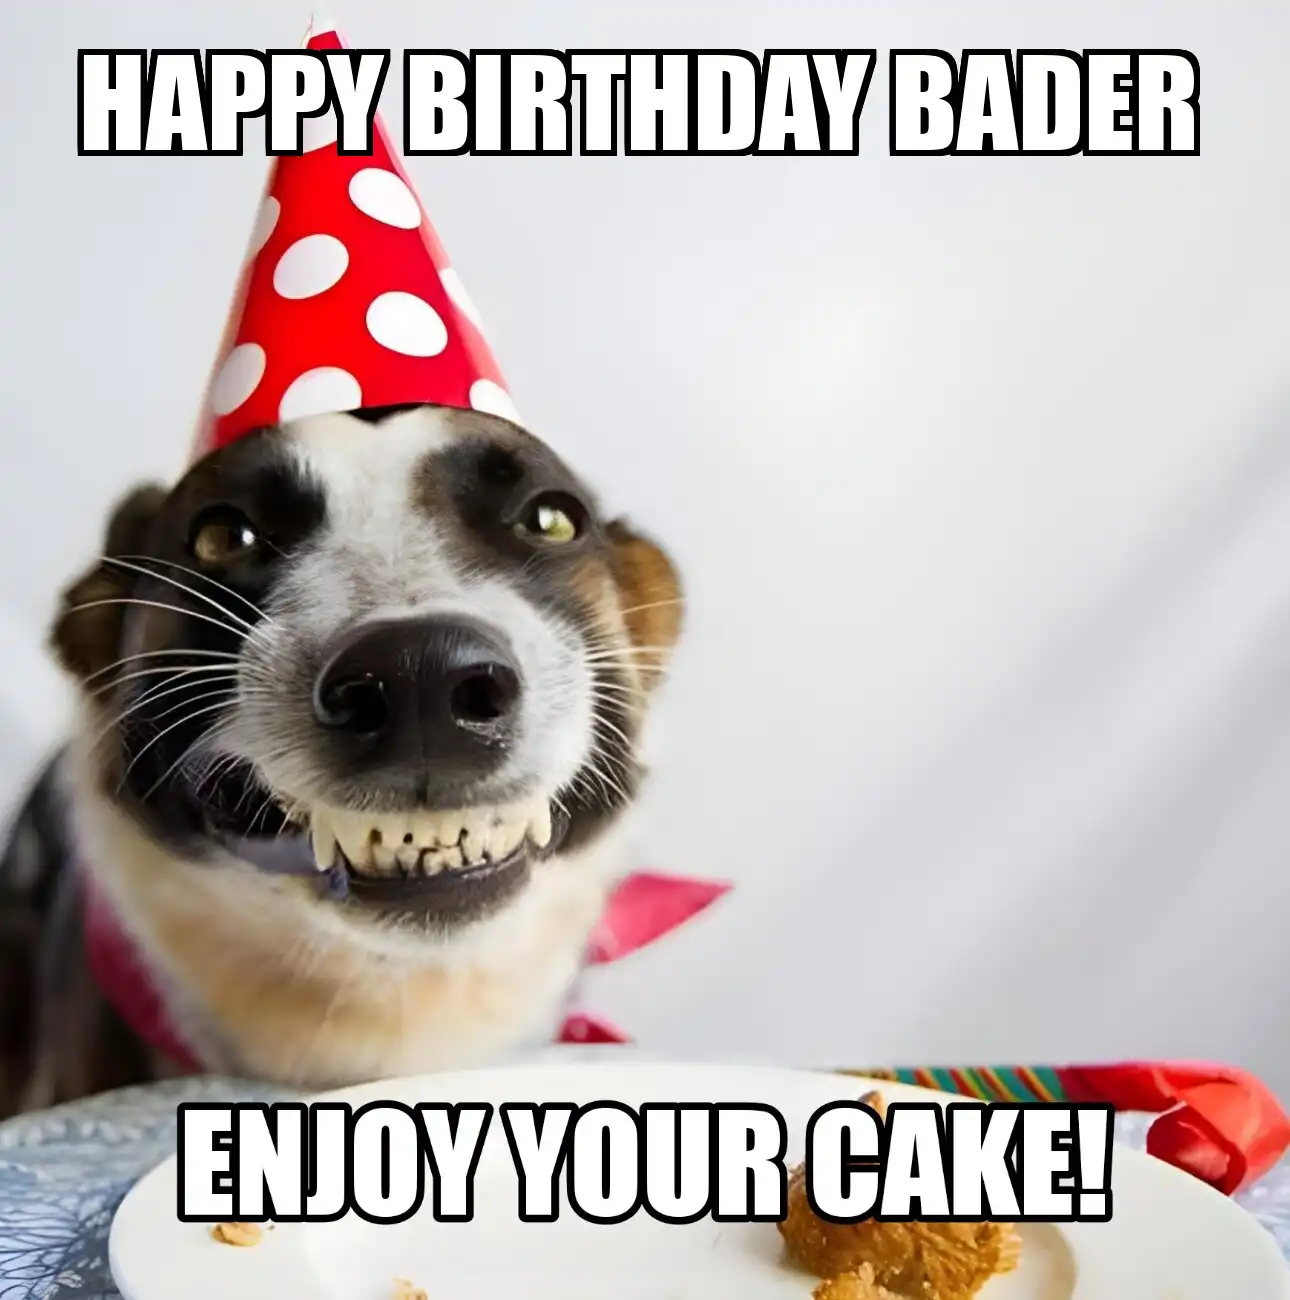 Happy Birthday Bader Enjoy Your Cake Dog Meme